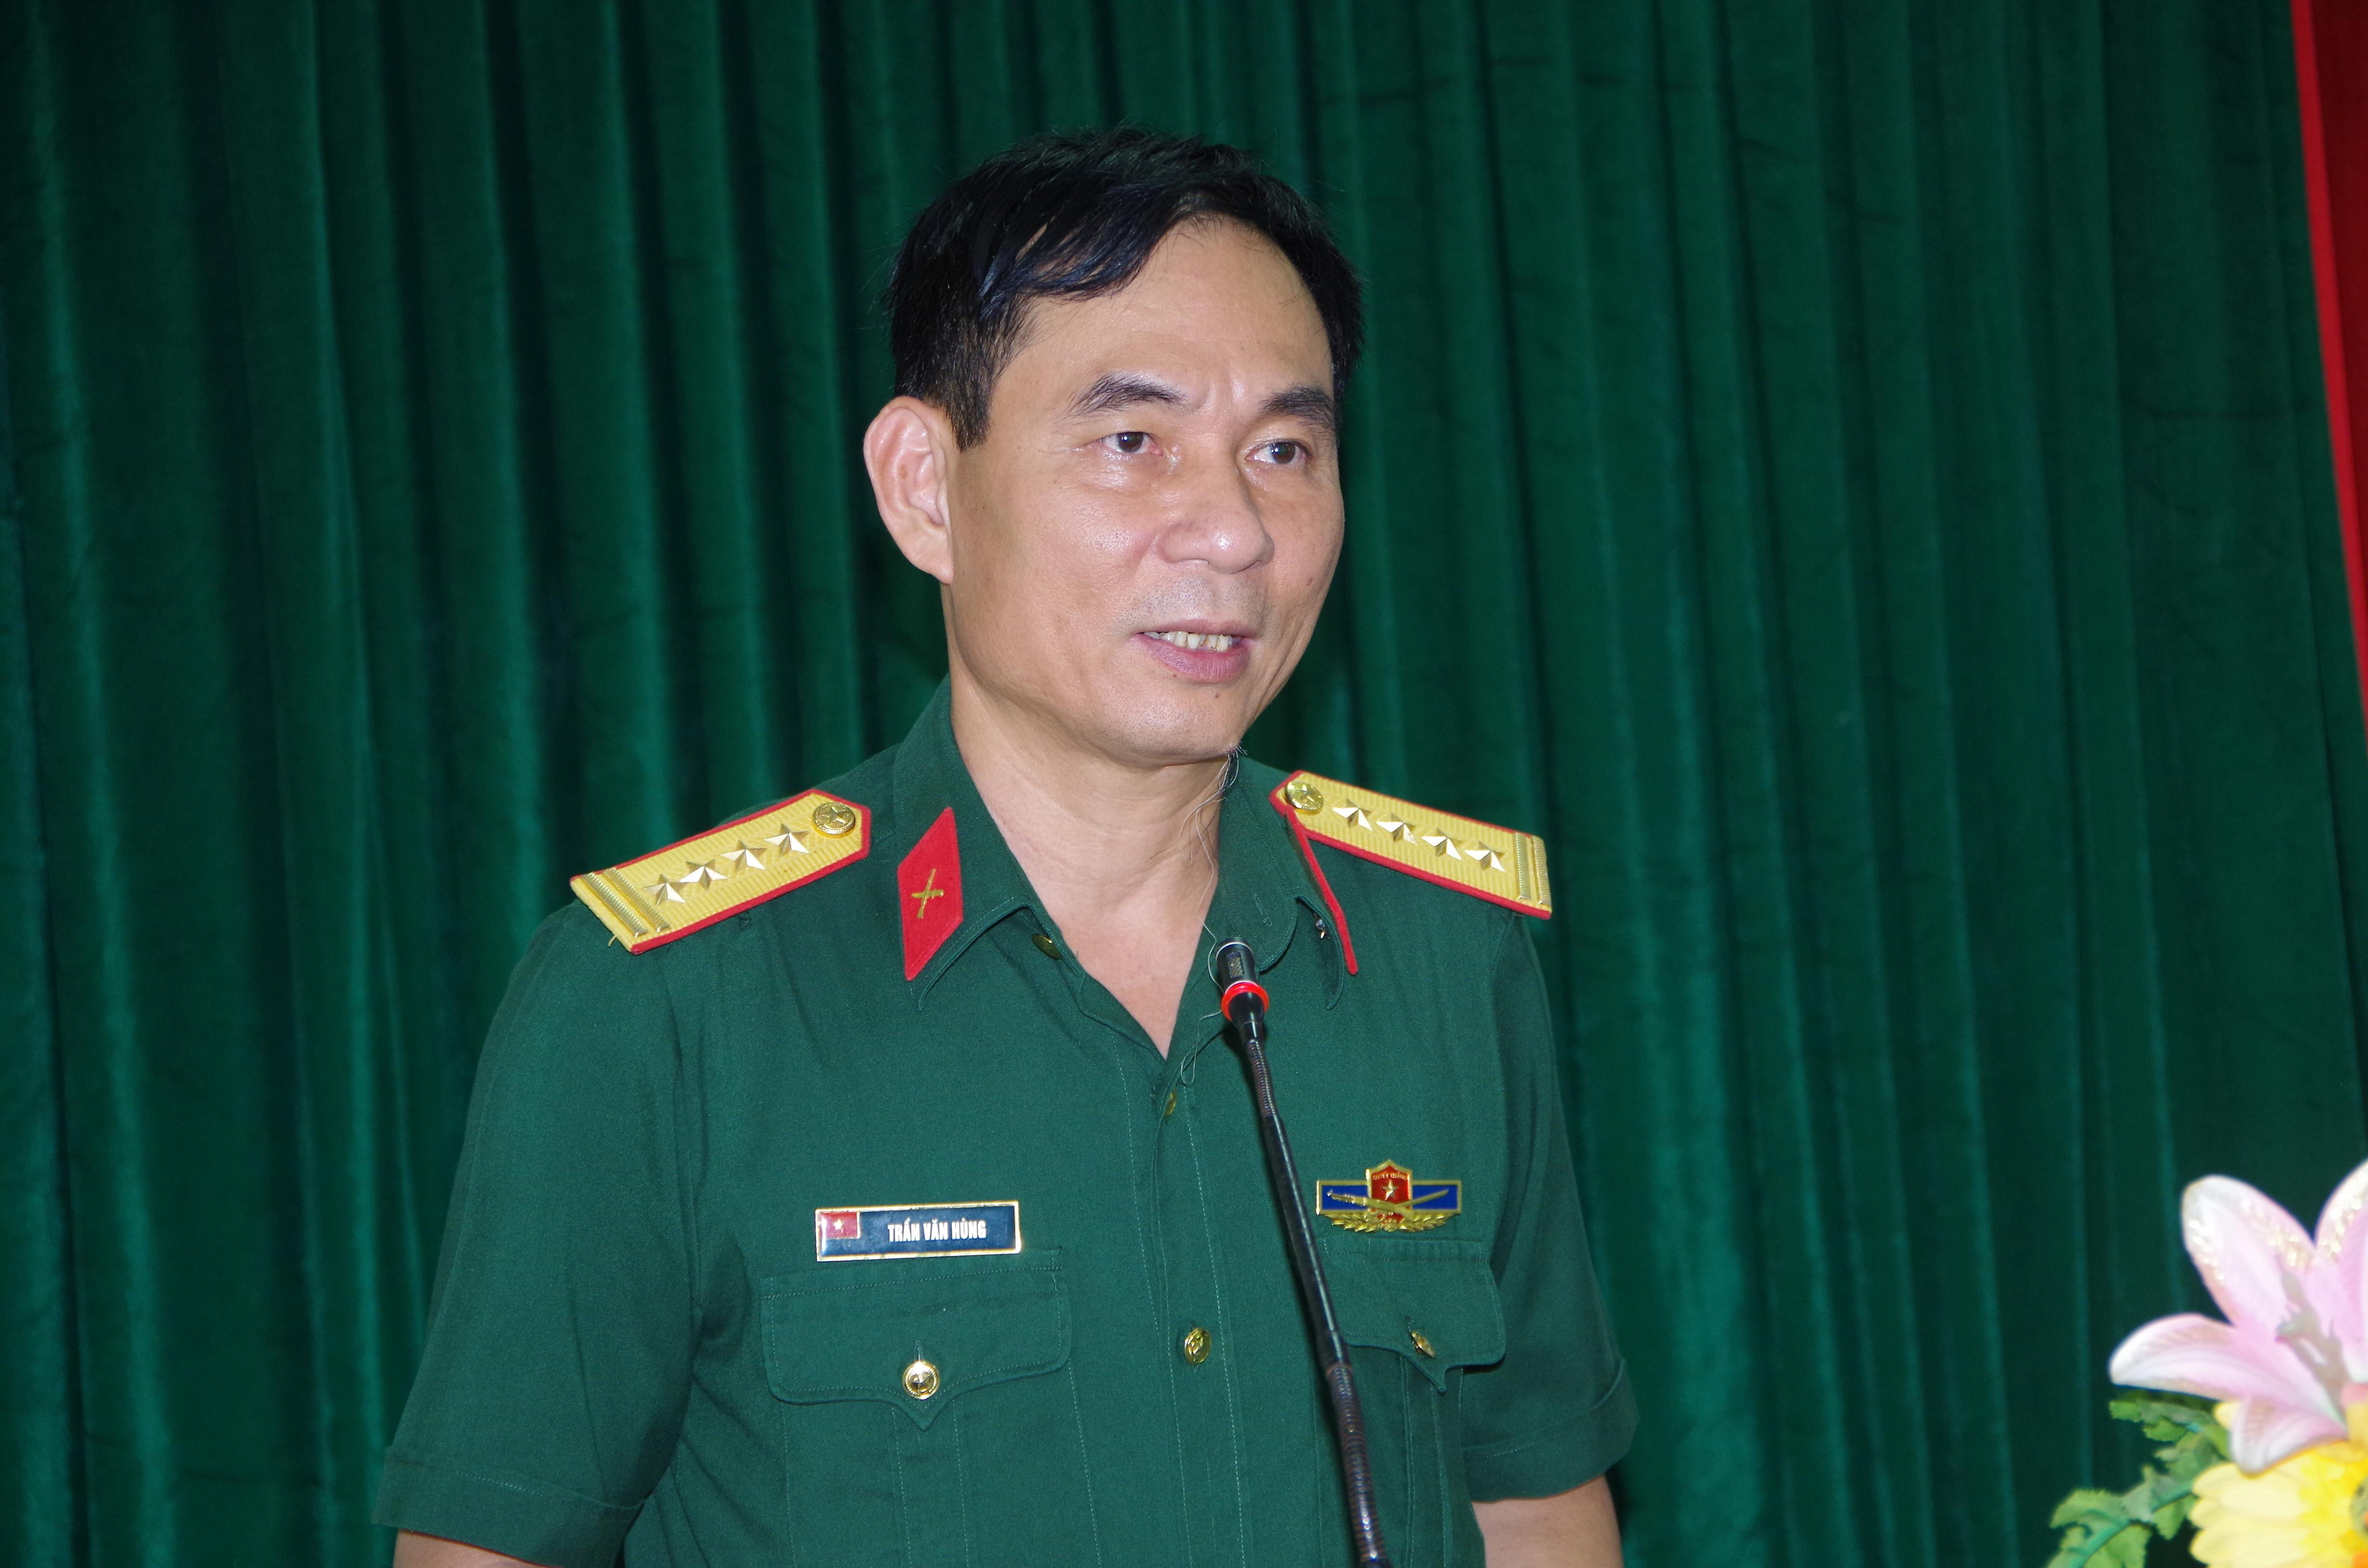 Đại tá Trần Văn Hùng - Ủy viên Ban Thường vụ Tỉnh ủy, Chỉ huy trưởng Bộ CHQS tỉnh, Phó trưởng ban thường trực Ban Chỉ đạo diễn tập Khu vực phòng thủ cấp huyện phát biểu giao nhiệm vụ cho lớp tập huấn.